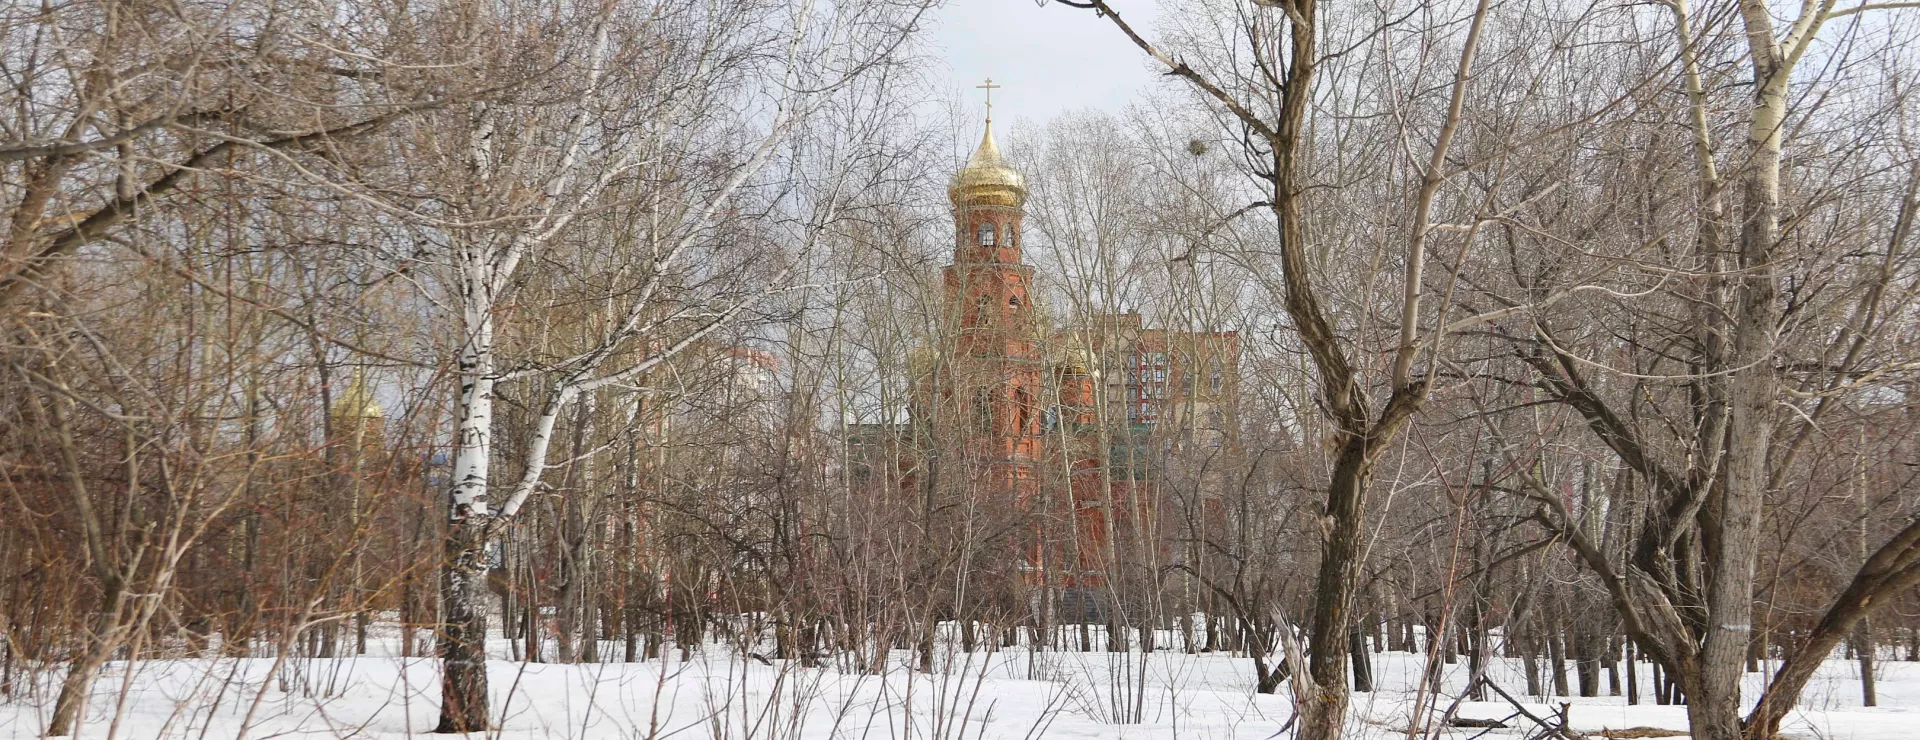 Весна, солнце, снегири. Как выглядит самый дикий парк Барнаула перед реконструкцией